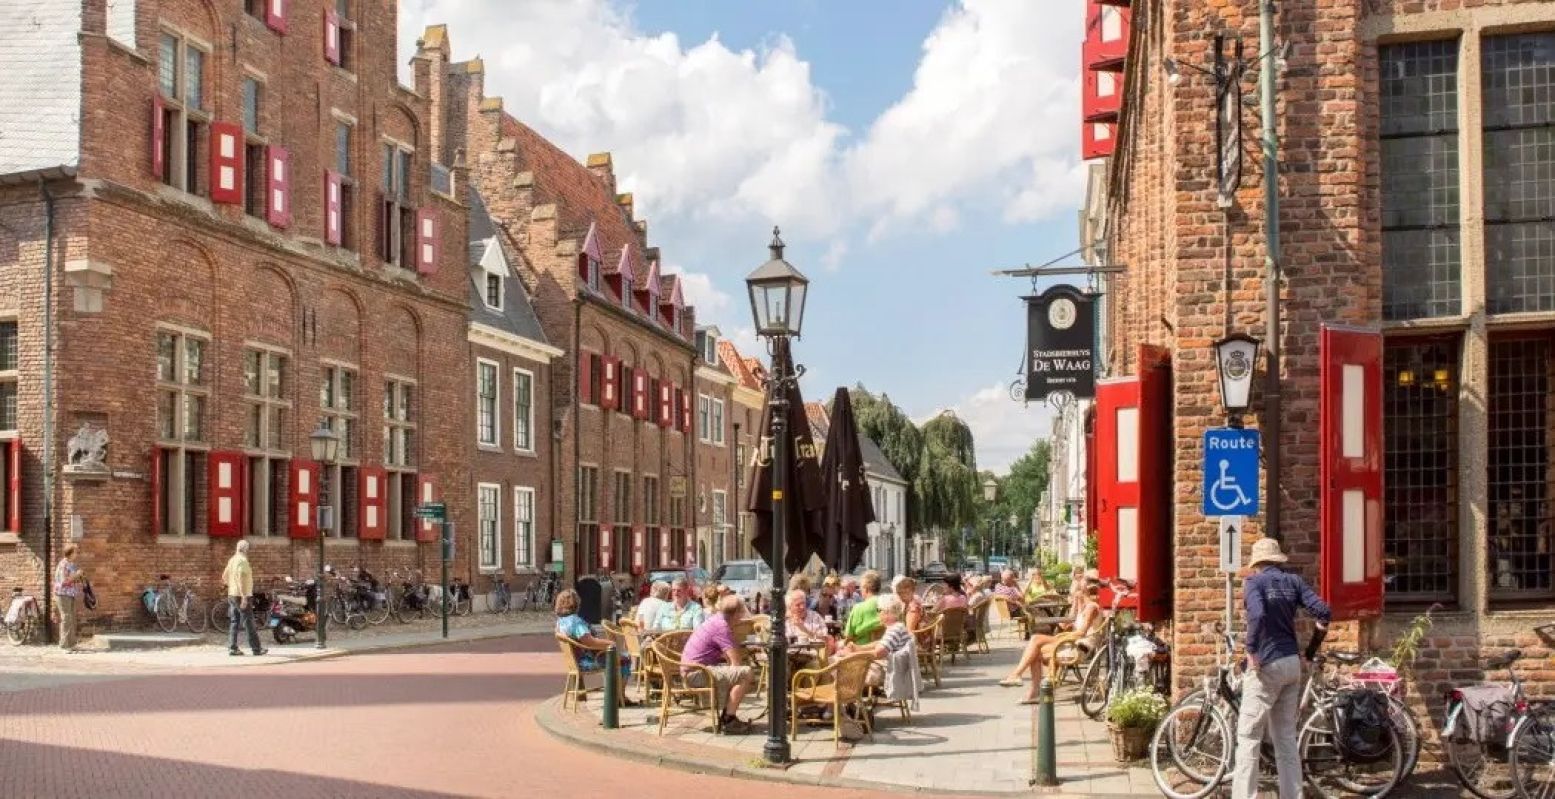 Stadsbierhuis De Waag in het historische centrum van de Gelderse Hanzestad Doesburg. Foto: Hanzesteden Marketing